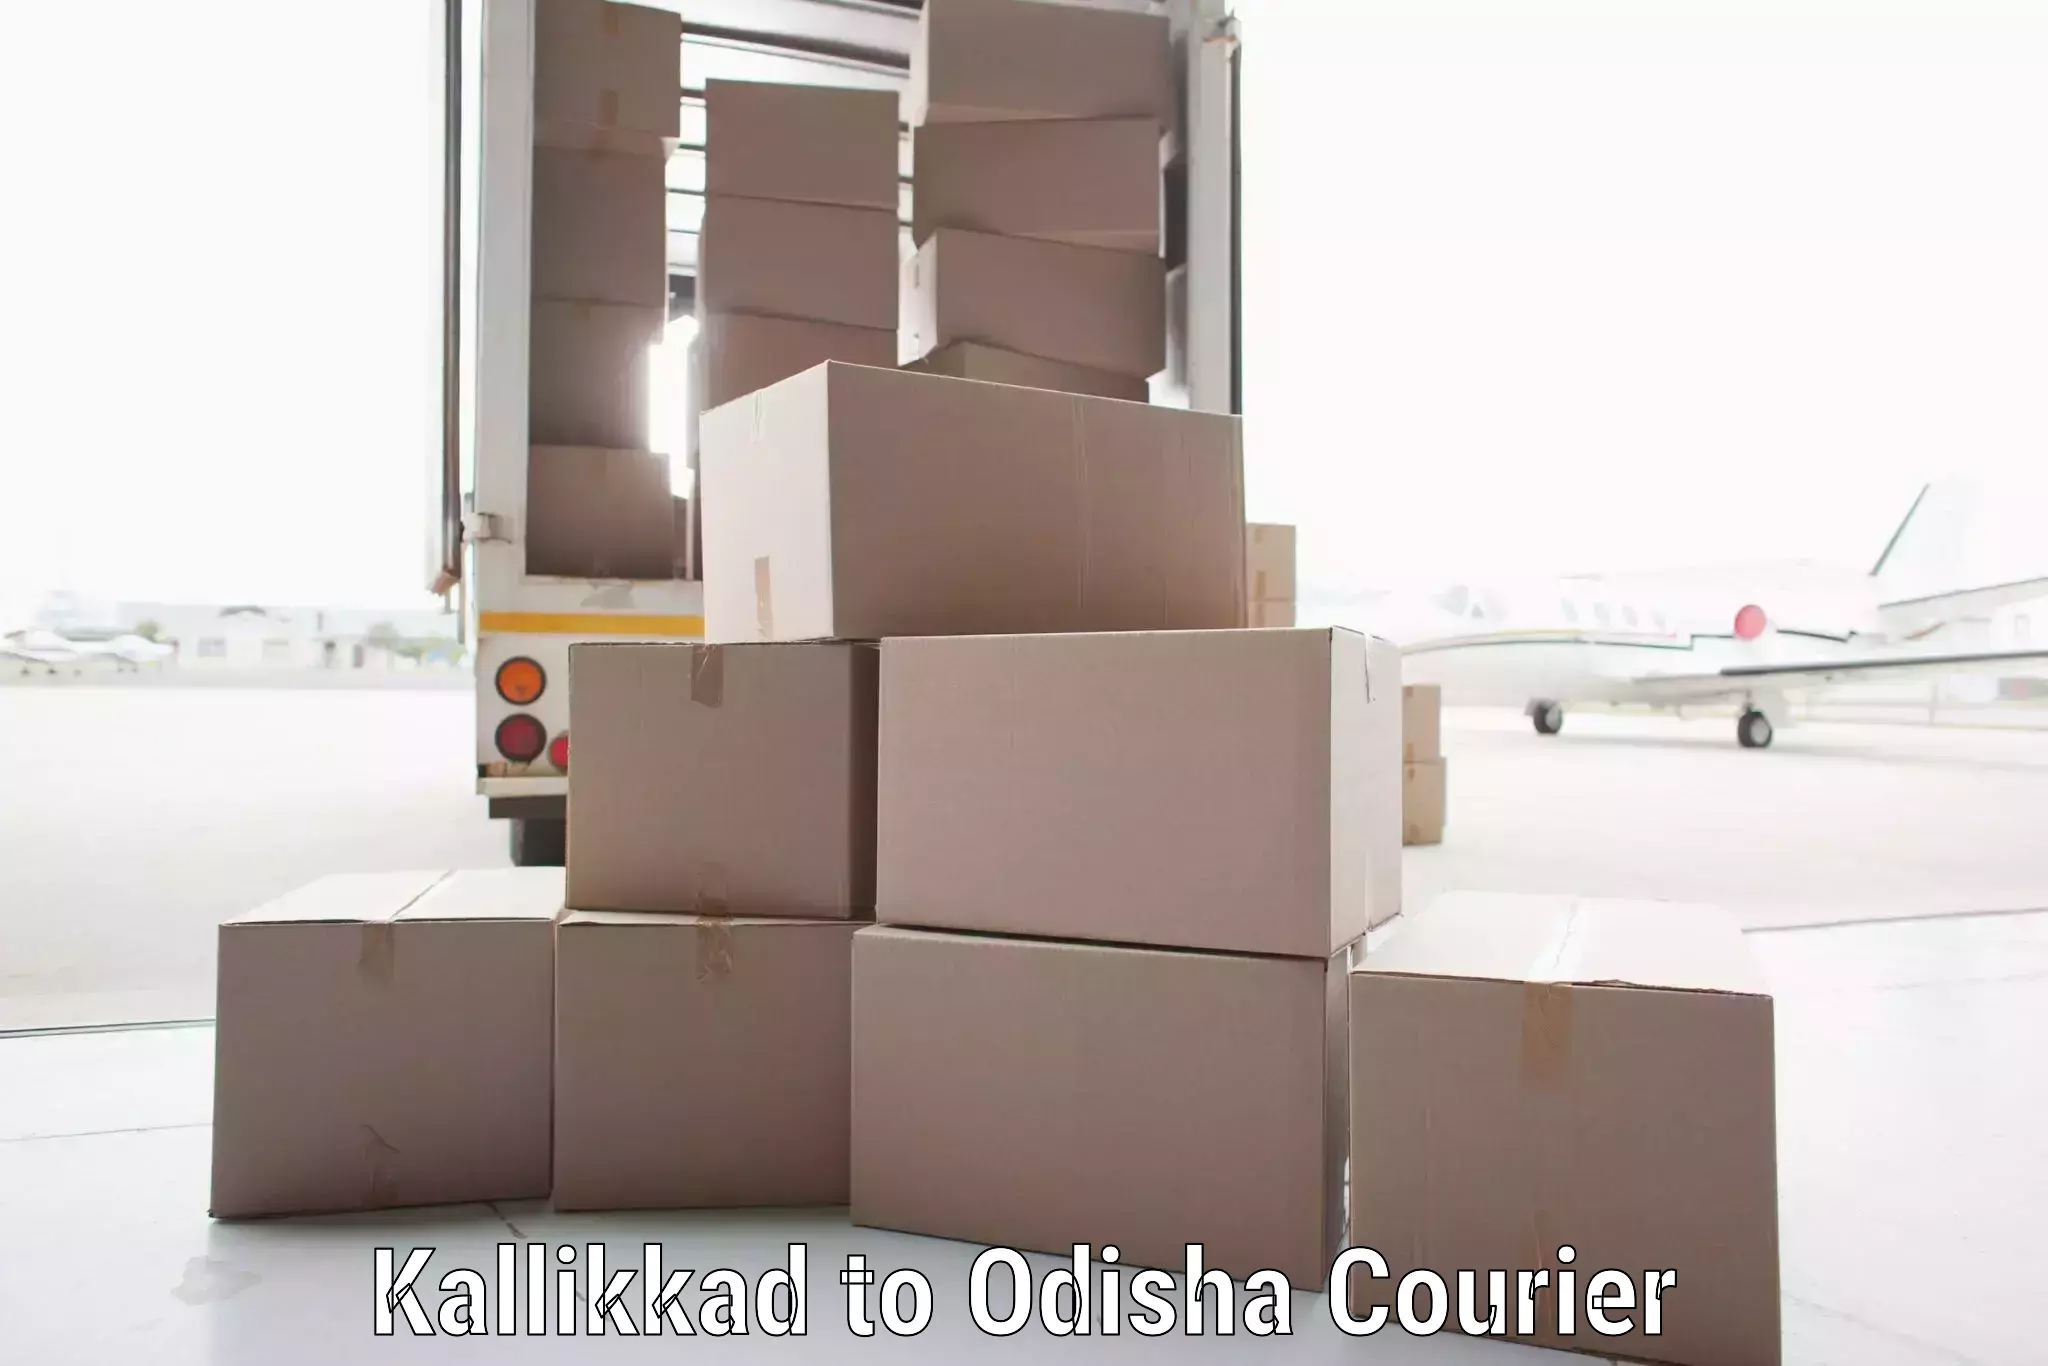 Reliable delivery network Kallikkad to Bhubaneswar